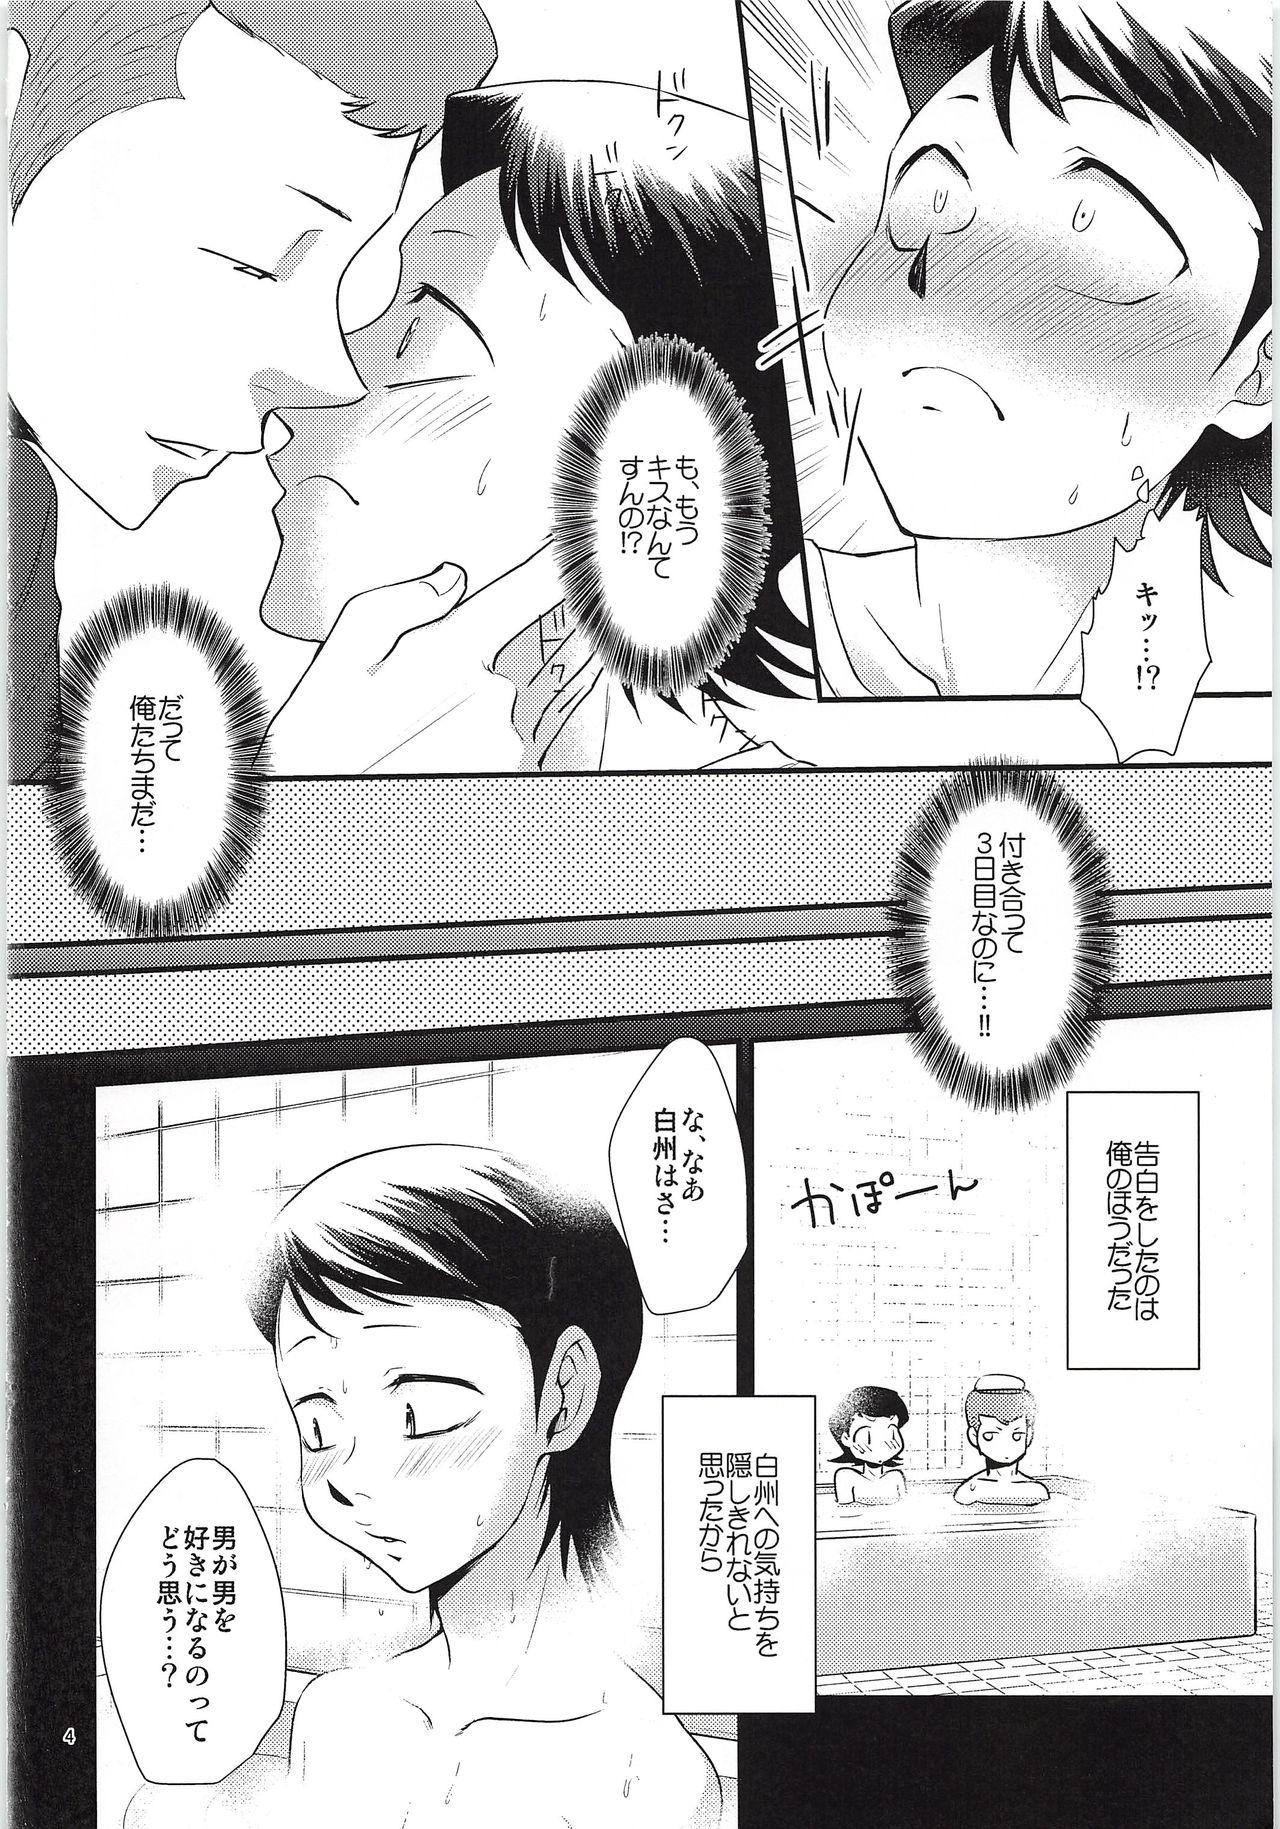 Lover Tsukiatte 3 Nichimenanoni Kareshi ga Guigui Semetekuru Ken - Daiya no ace Juicy - Page 3